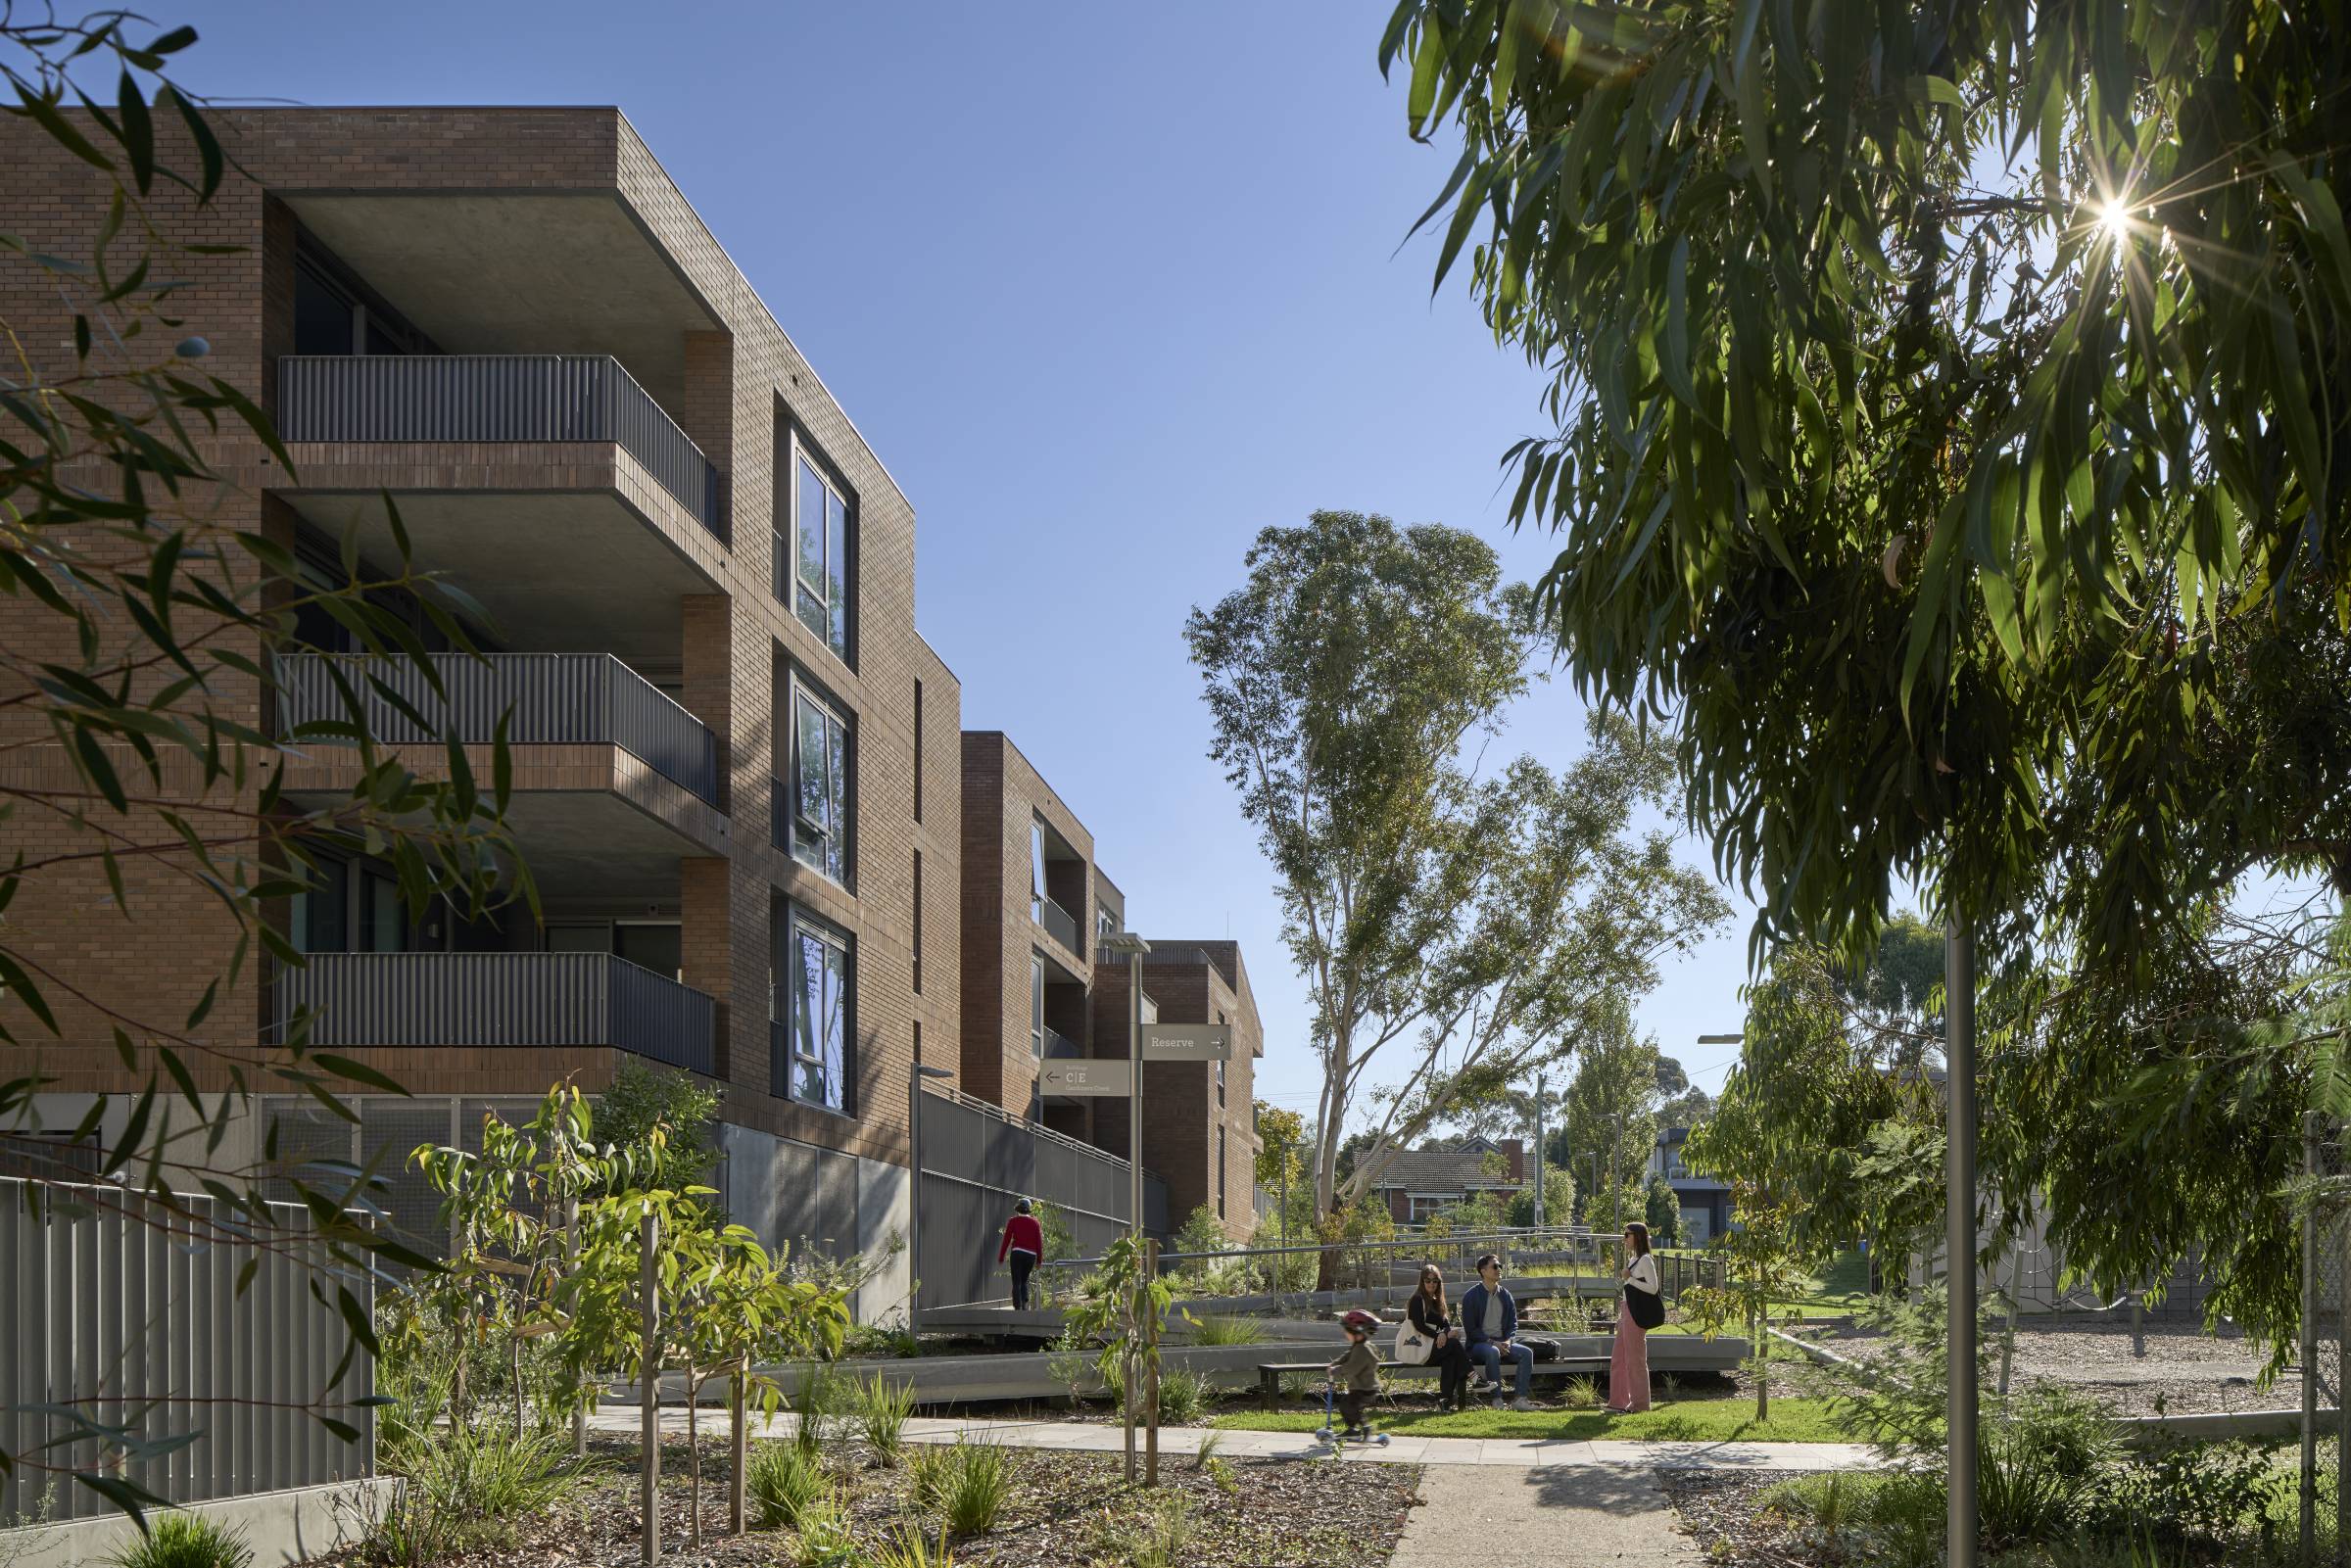 Sunshine Coast University Hospital | Health and public architecture